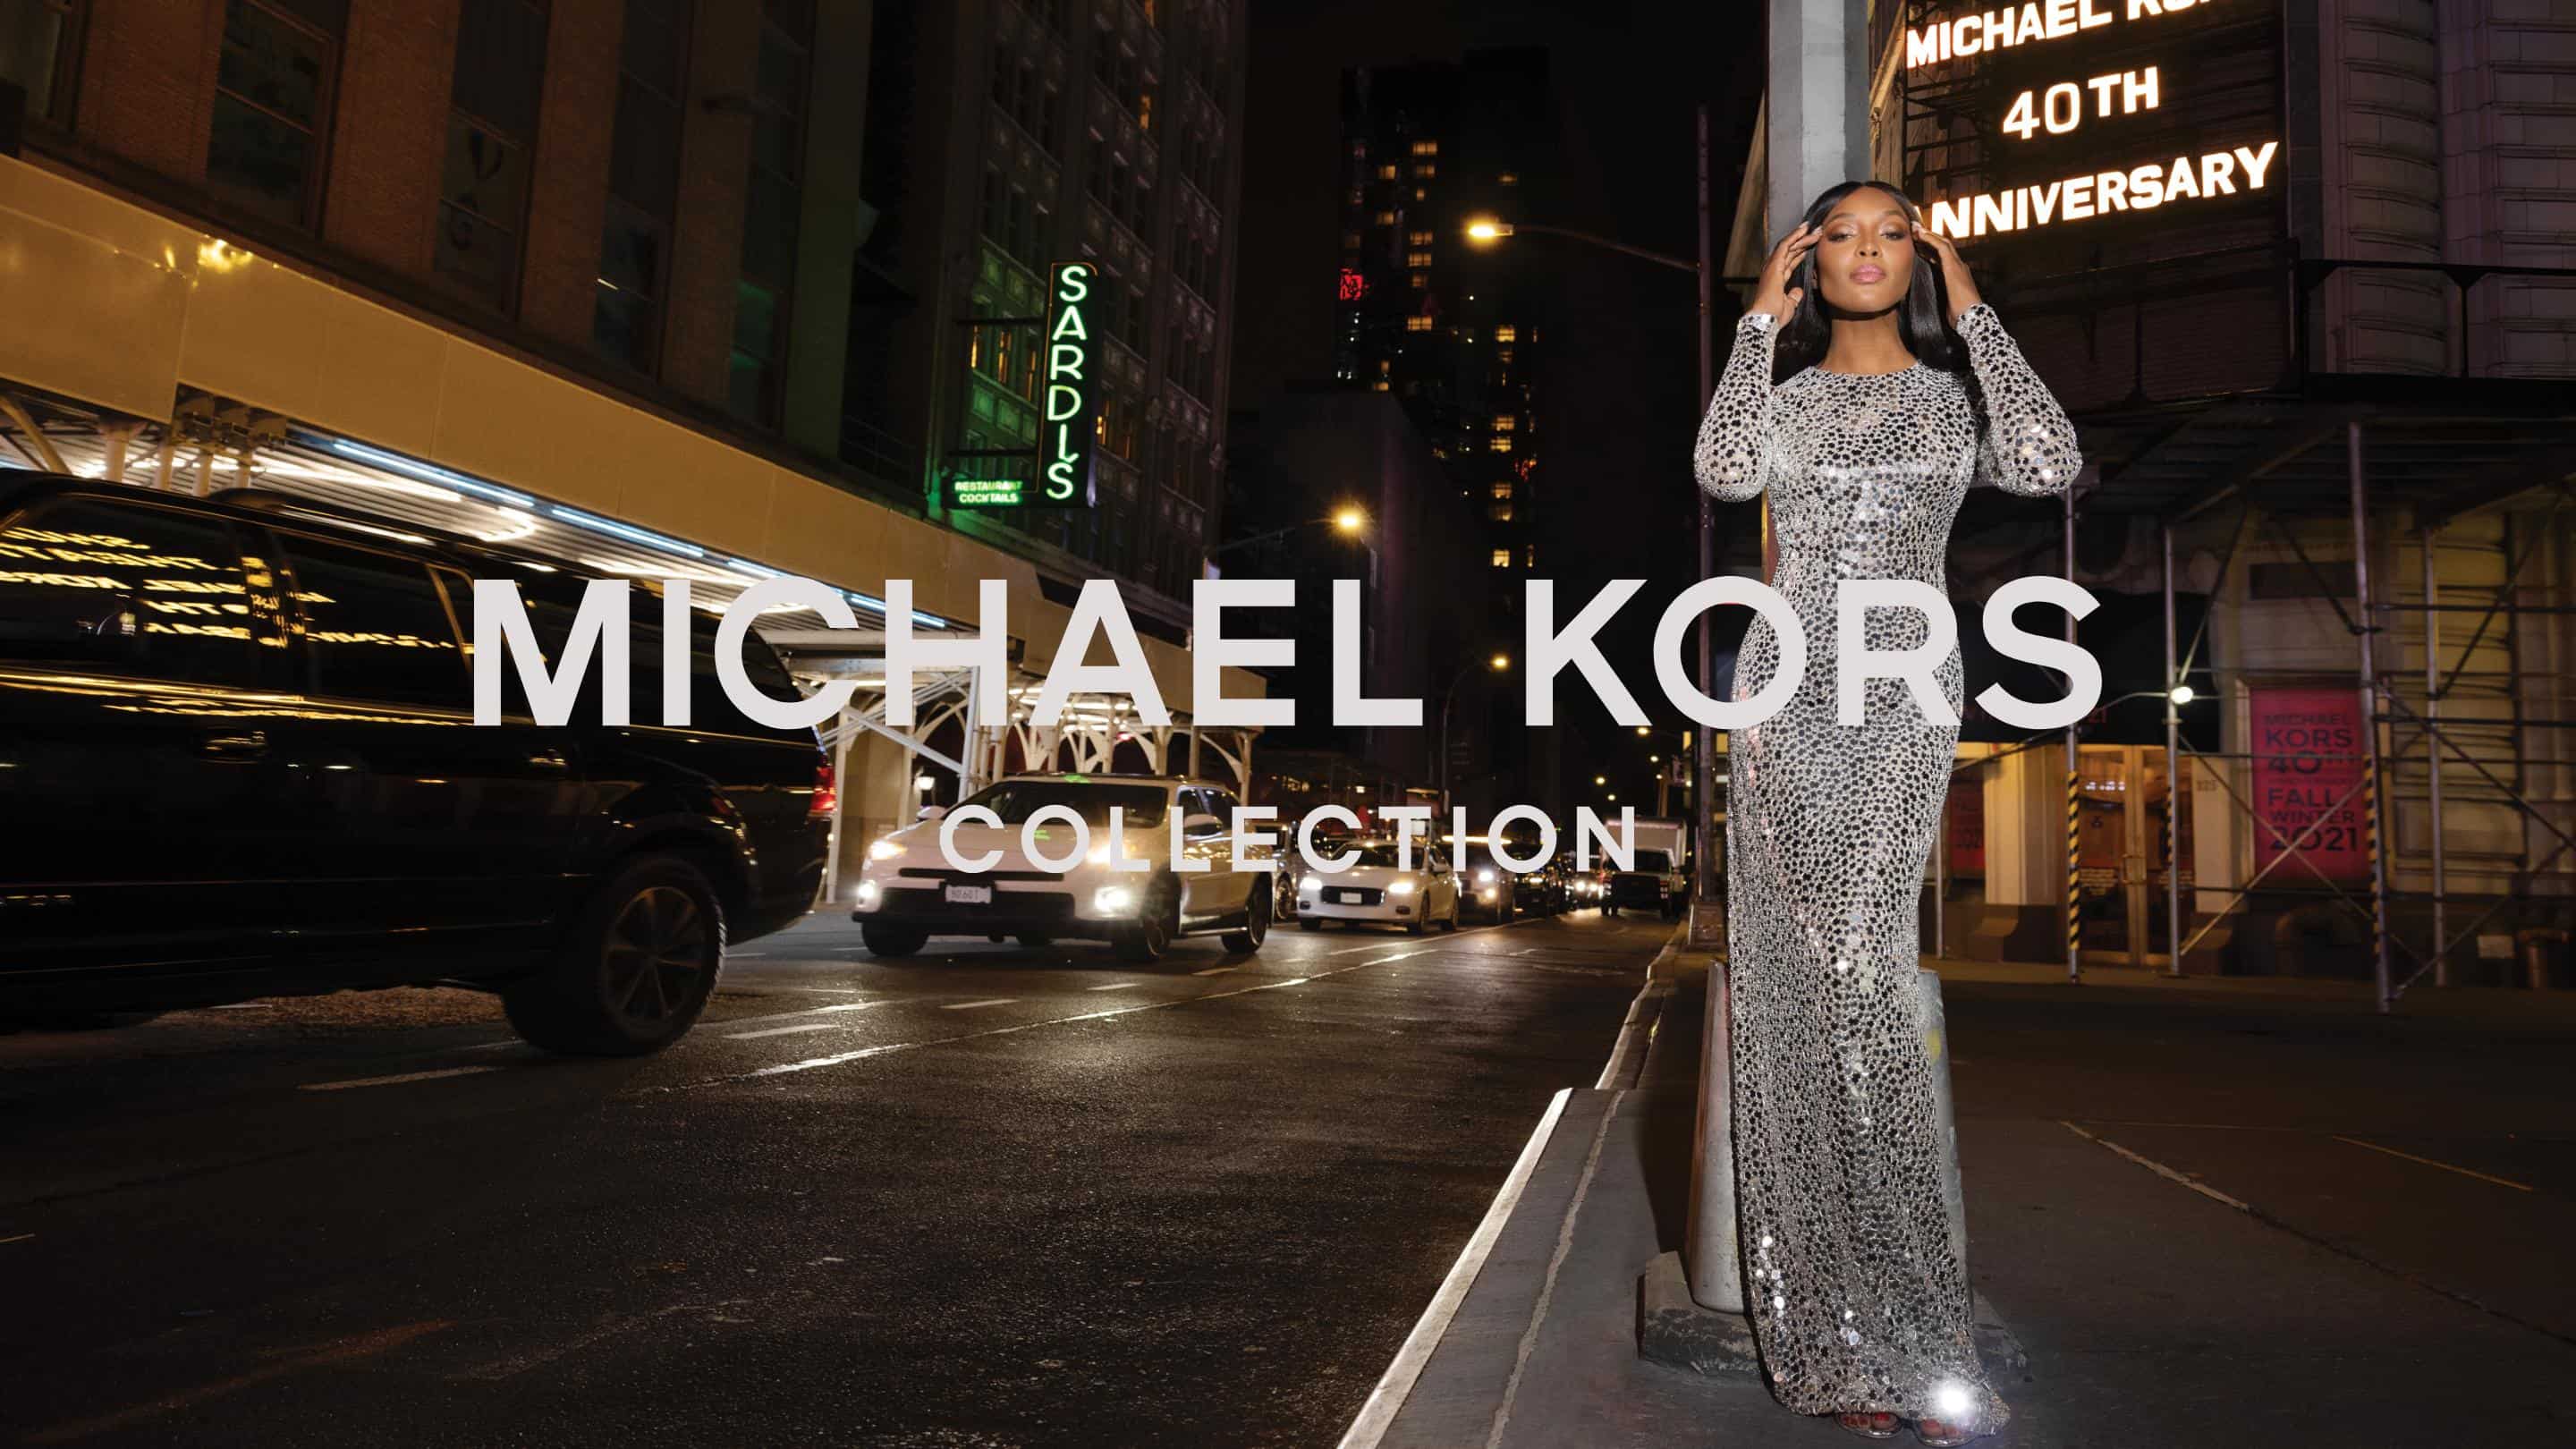 Michael Kors Collection